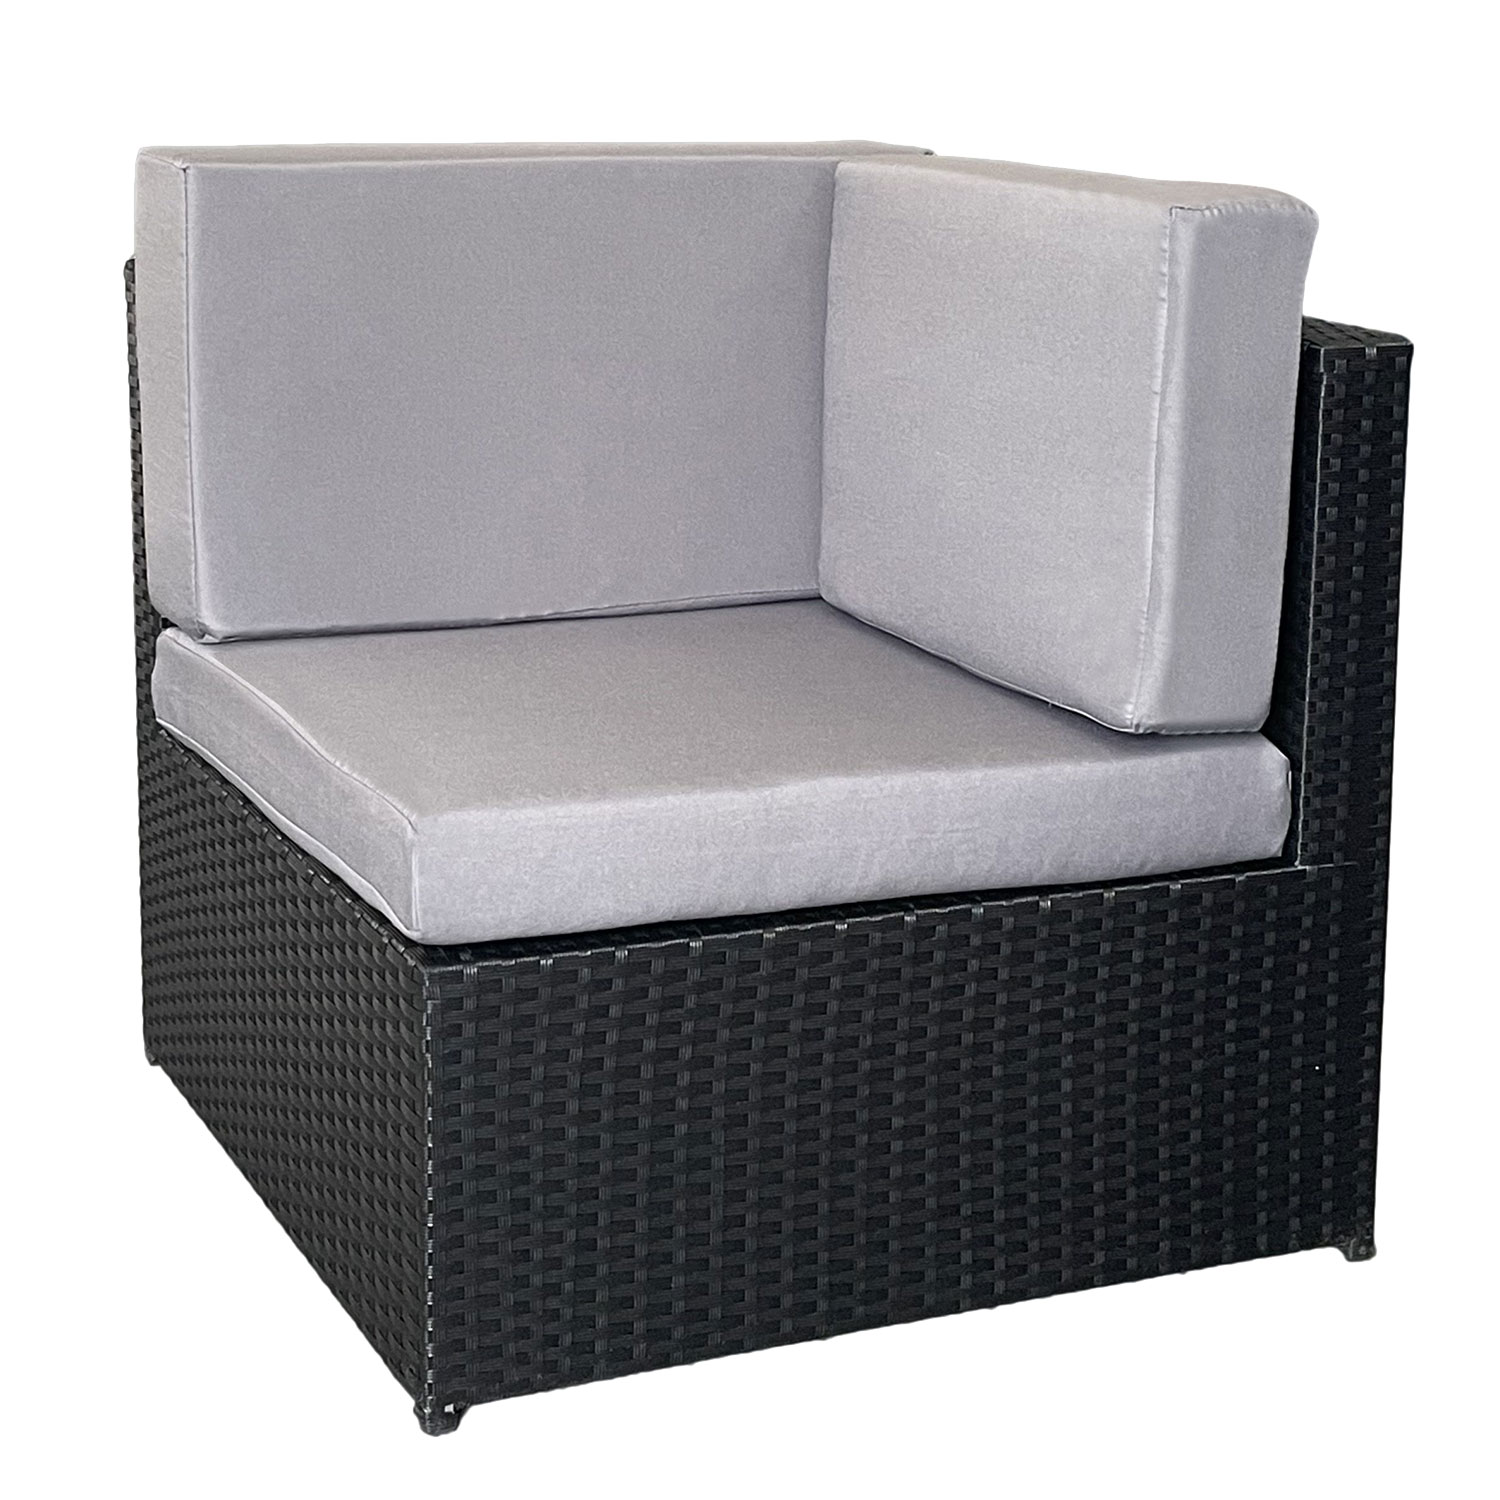 Conjunto de muebles de jardín BONIFACIO de resina tejida negra, con capacidad para 6 personas - cojín gris